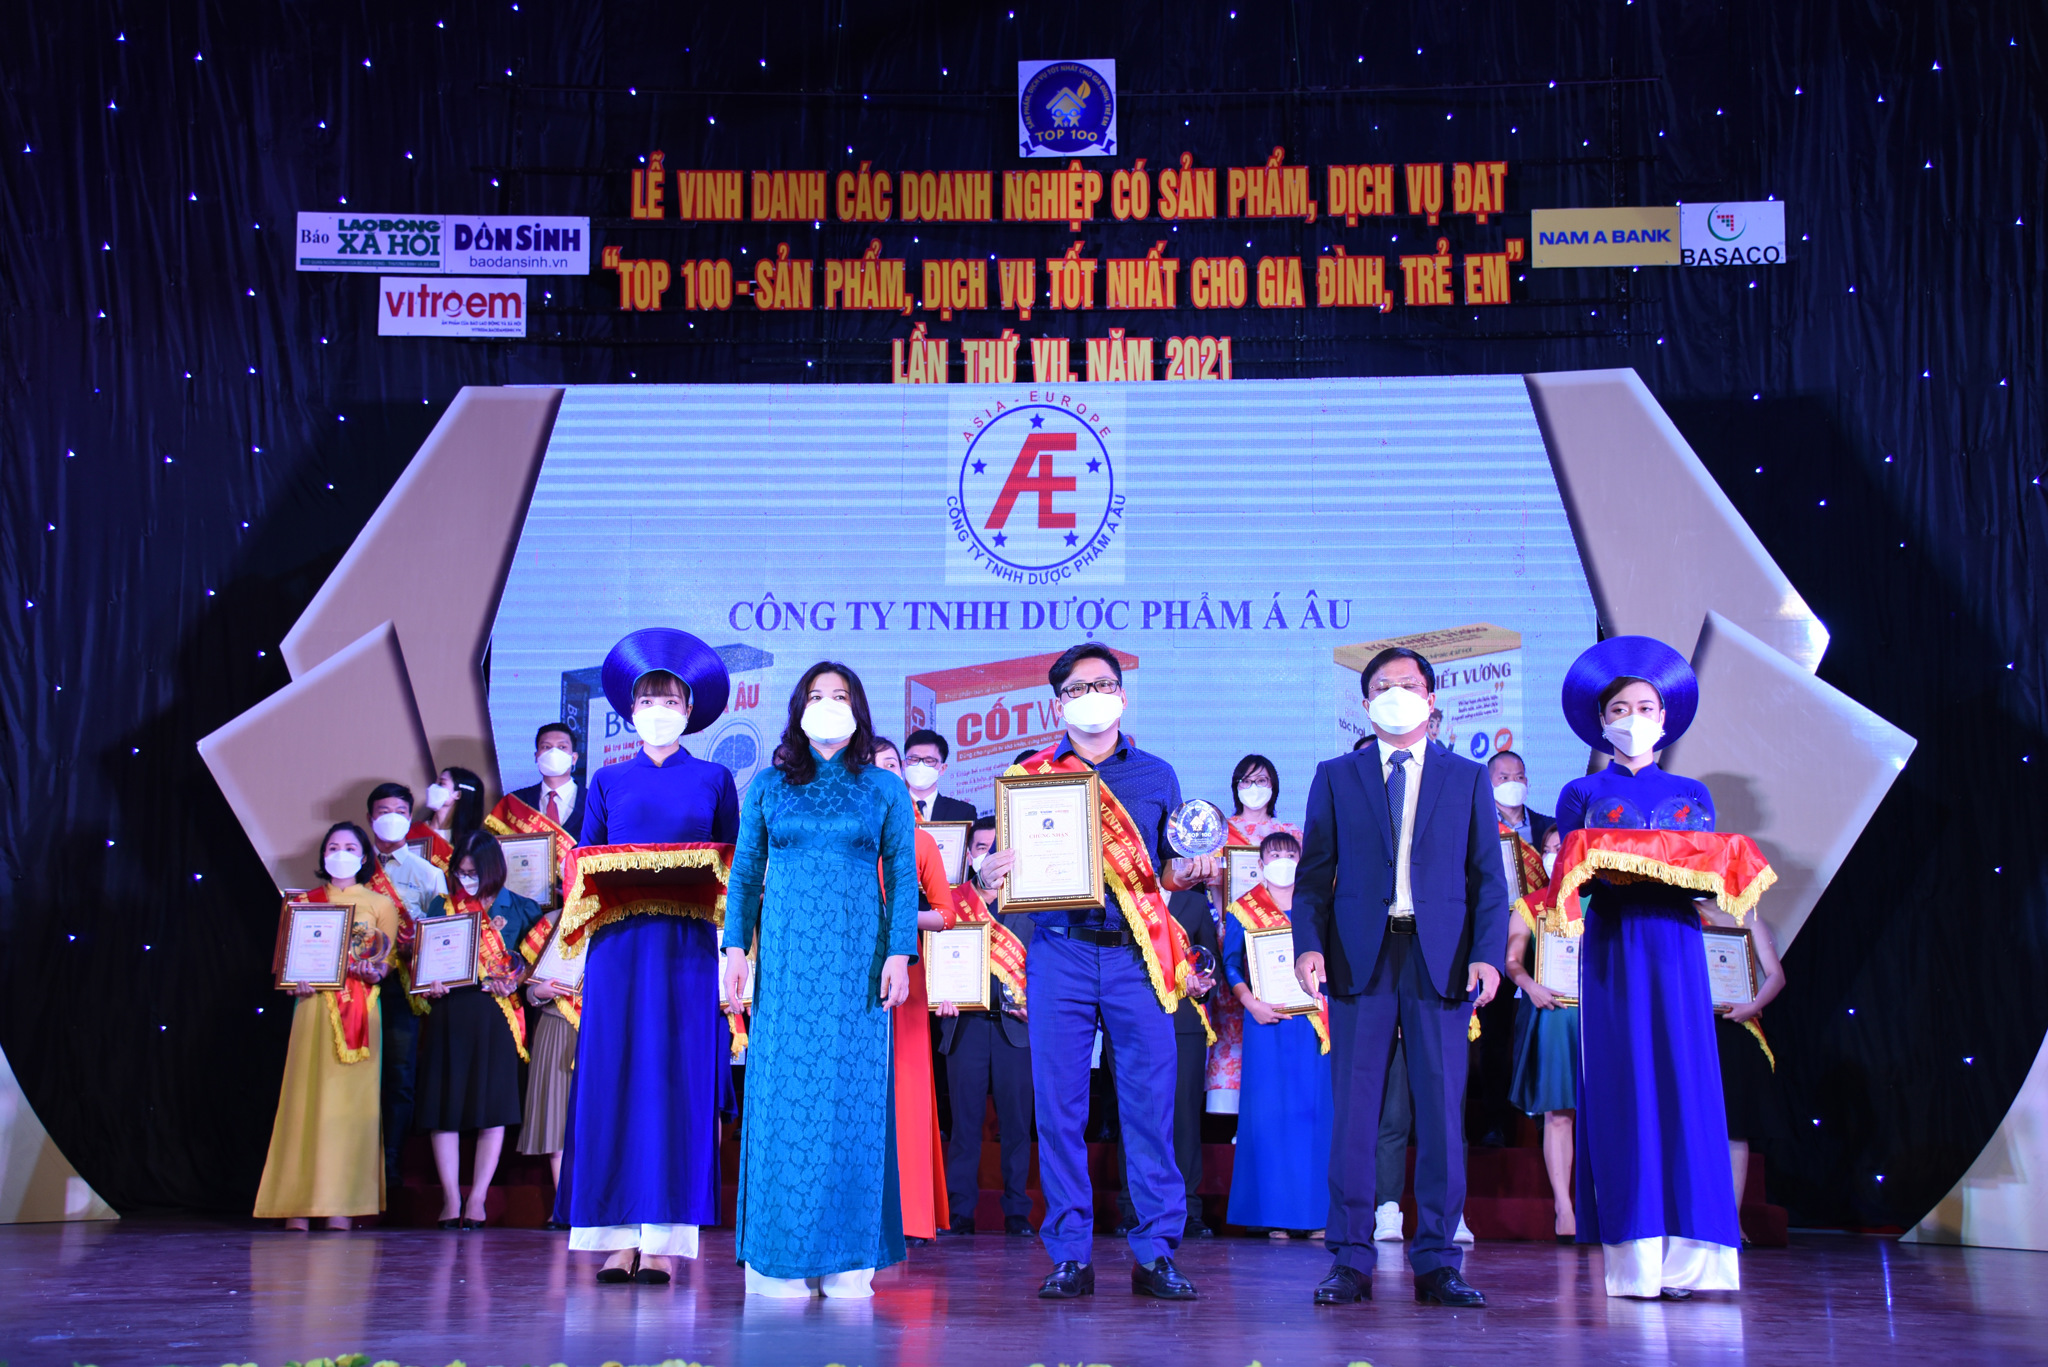 Ông Nguyễn Trường Đông, đại diện Công ty Dược phẩm Á Âu lên nhận giải thưởng vinh danh